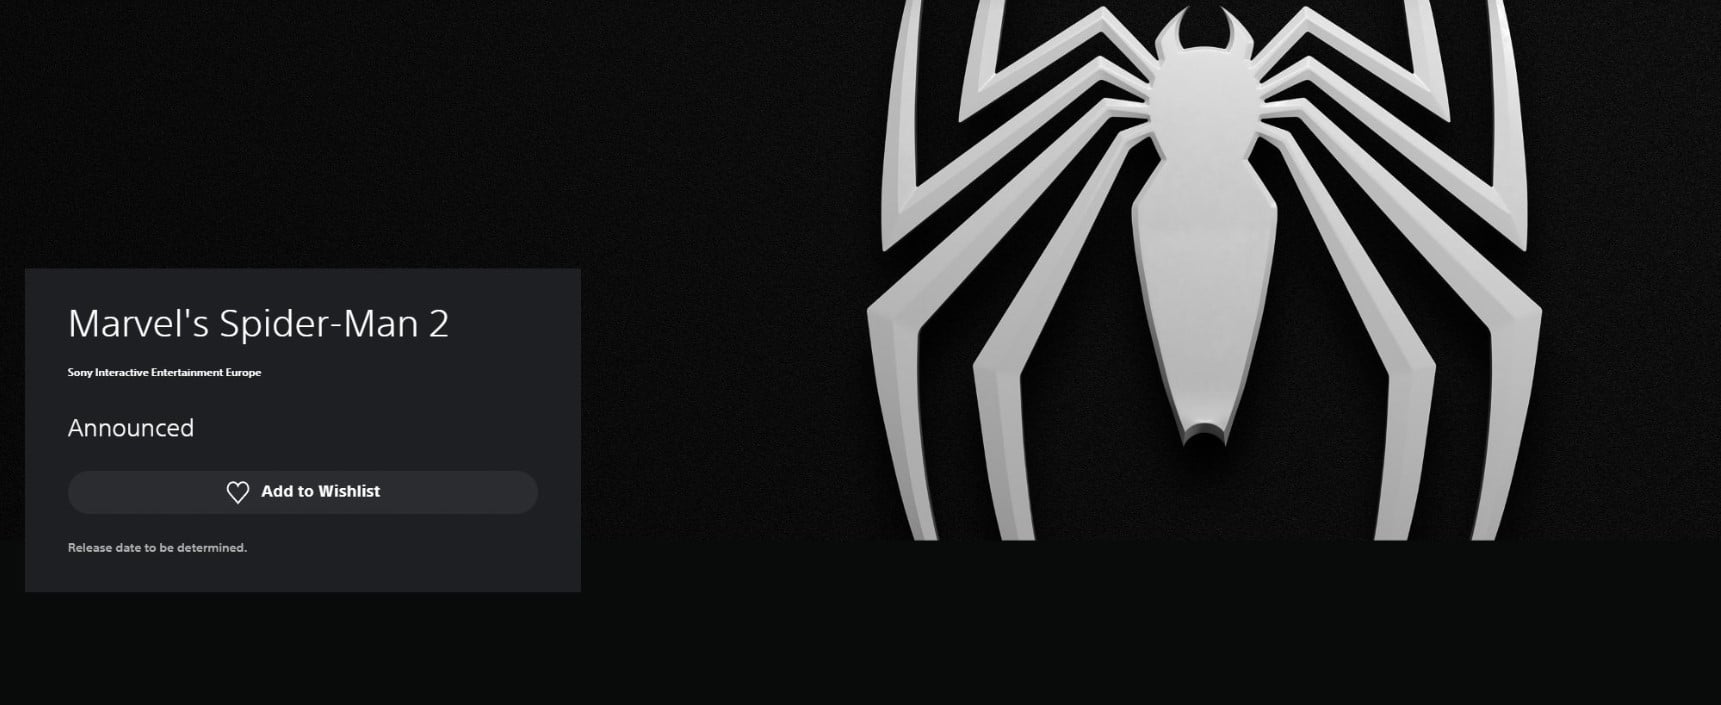 Marvel's Spider-Man 2 aparece en PlayStation Store y fanáticos enloquecen , GamersRD